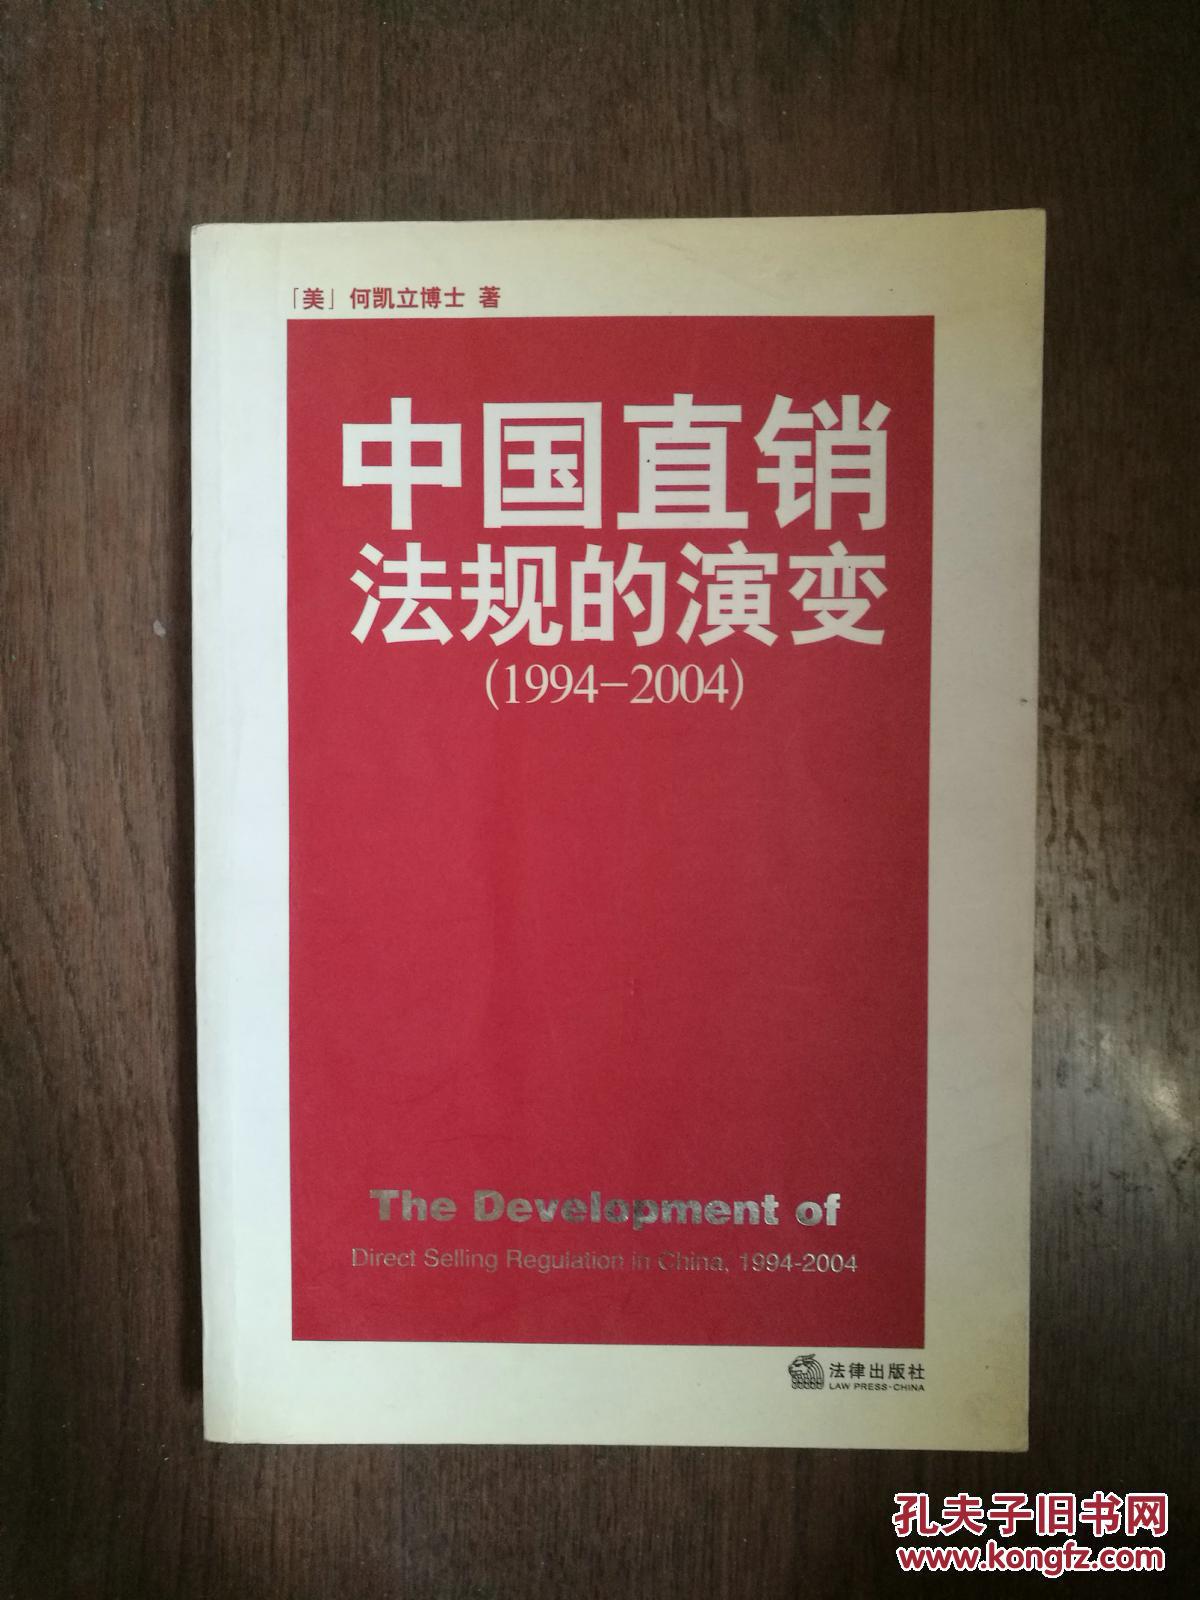 【图】中国直销法规的演变:1994~2004 正版现